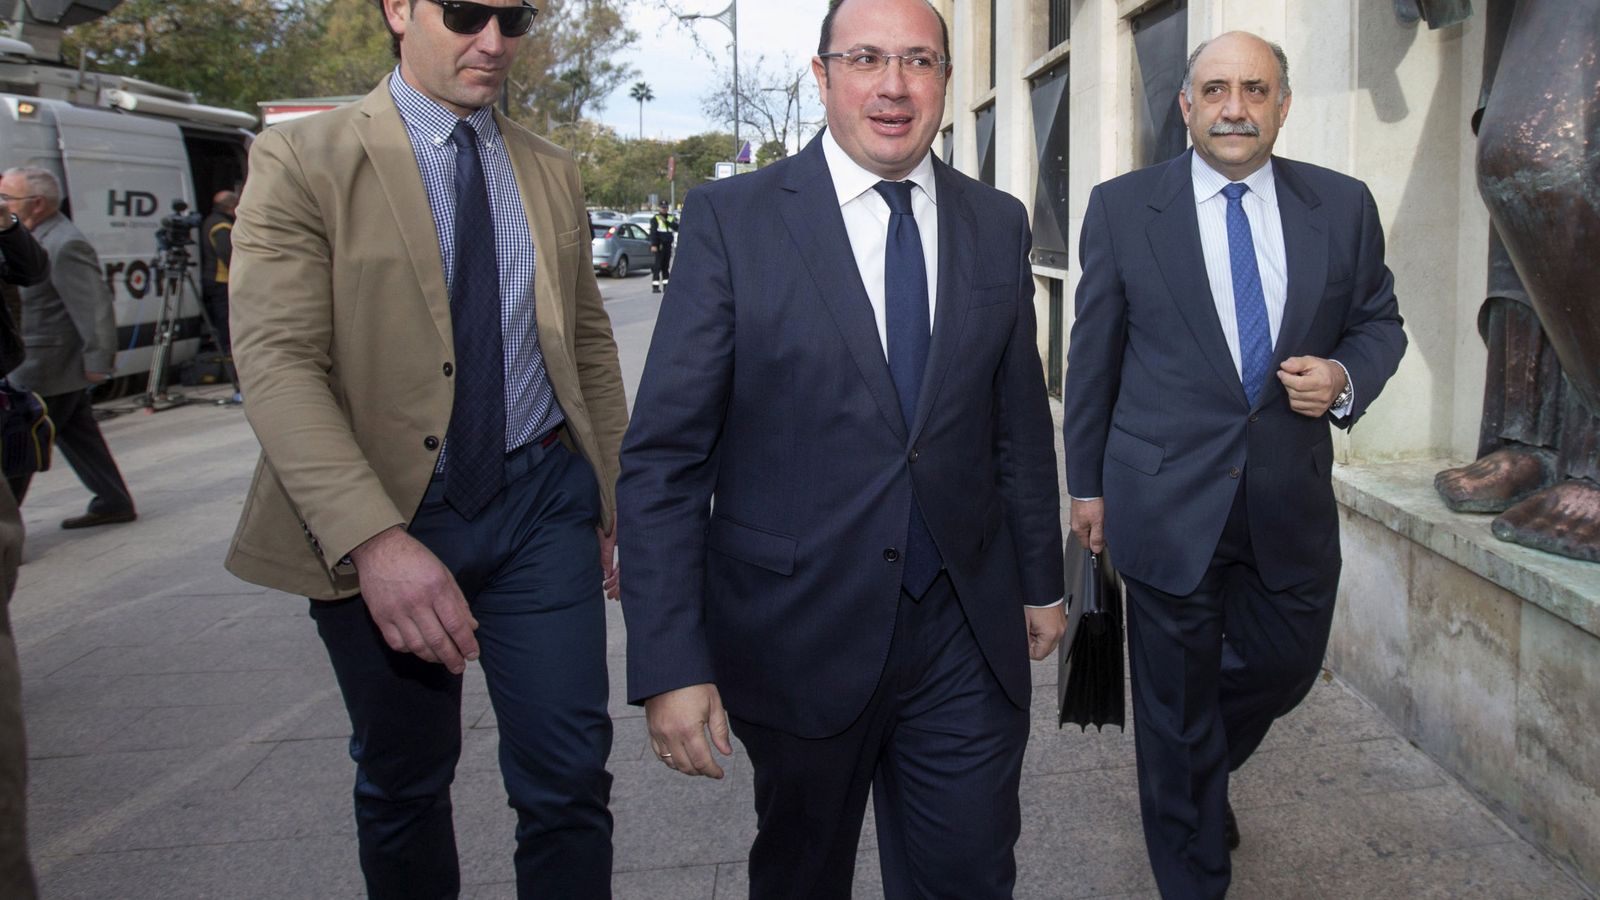 Foto: El presidente del Gobierno de Murcia, Pedro Antonio Sánchez, este lunes a su llegada al Tribunal Superior de Justicia de Murcia para declarar como investigado. (Efe)